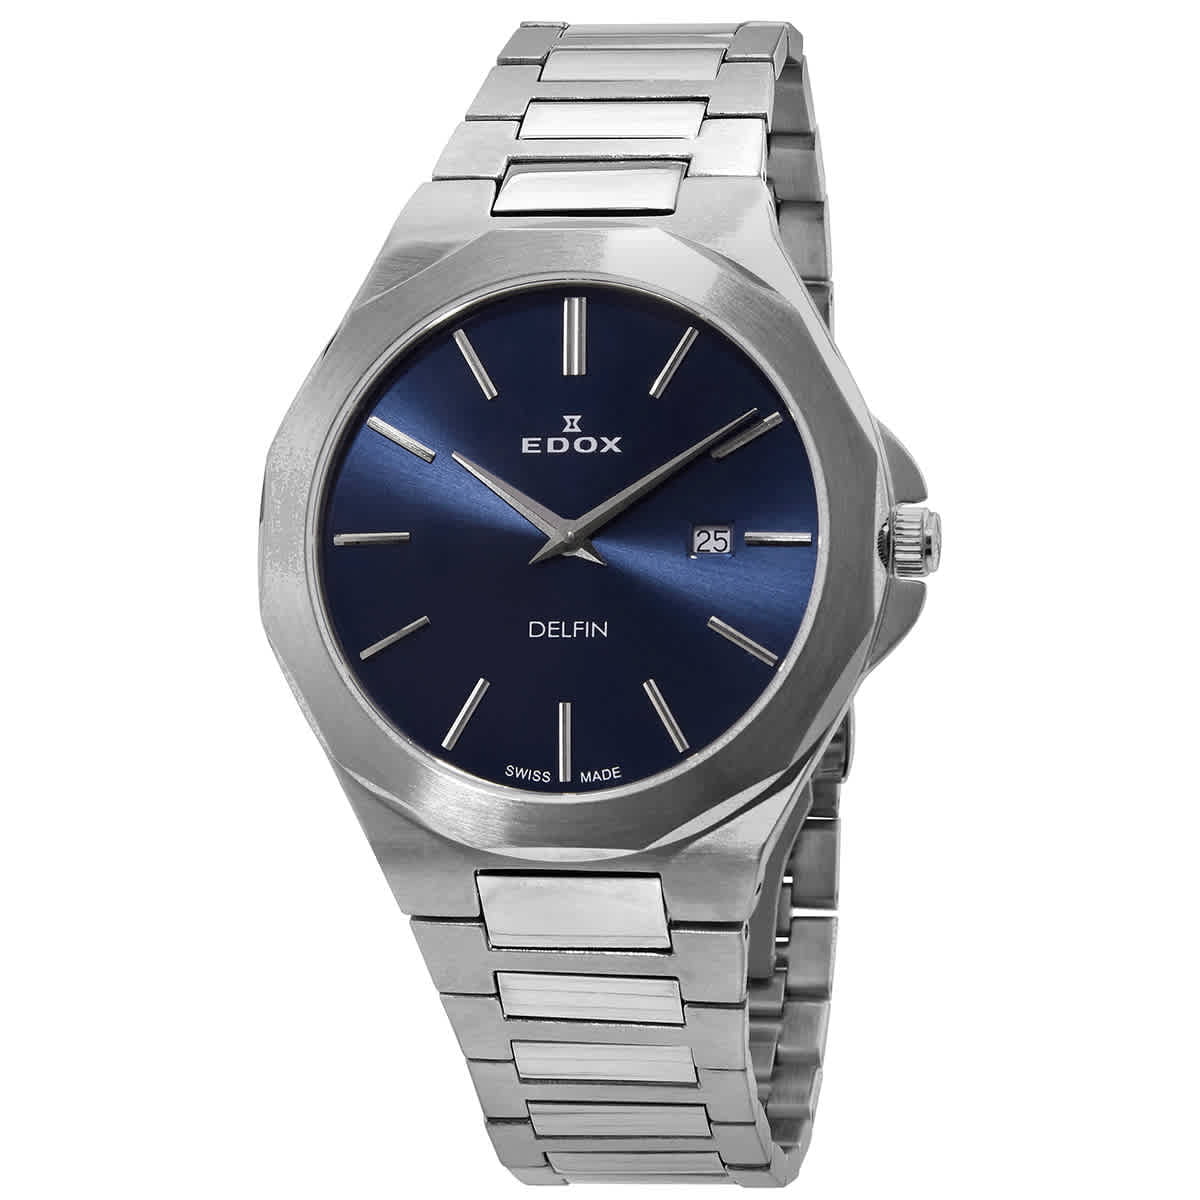 Edox Delfin Quartz Blue Dial Men's Watch 71289 3M BUIN - Walmart.com